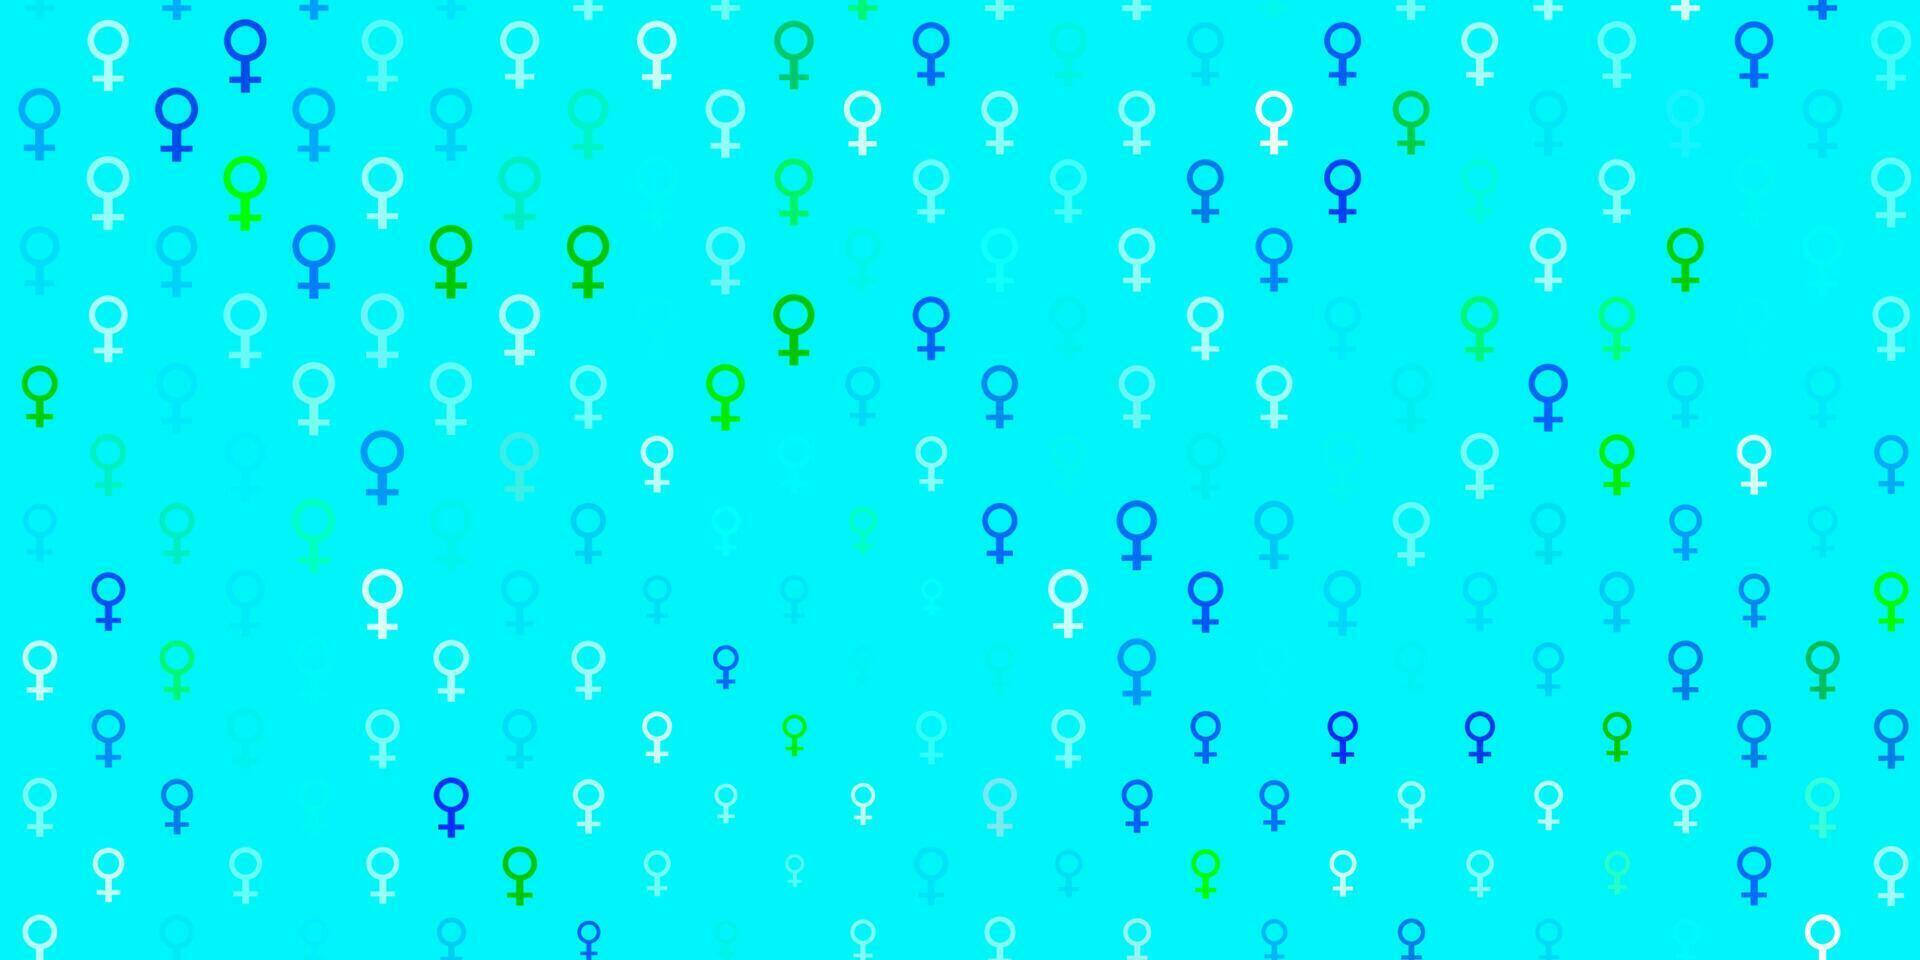 modelo de vetor azul e verde claro com sinais de mulher de negócios.